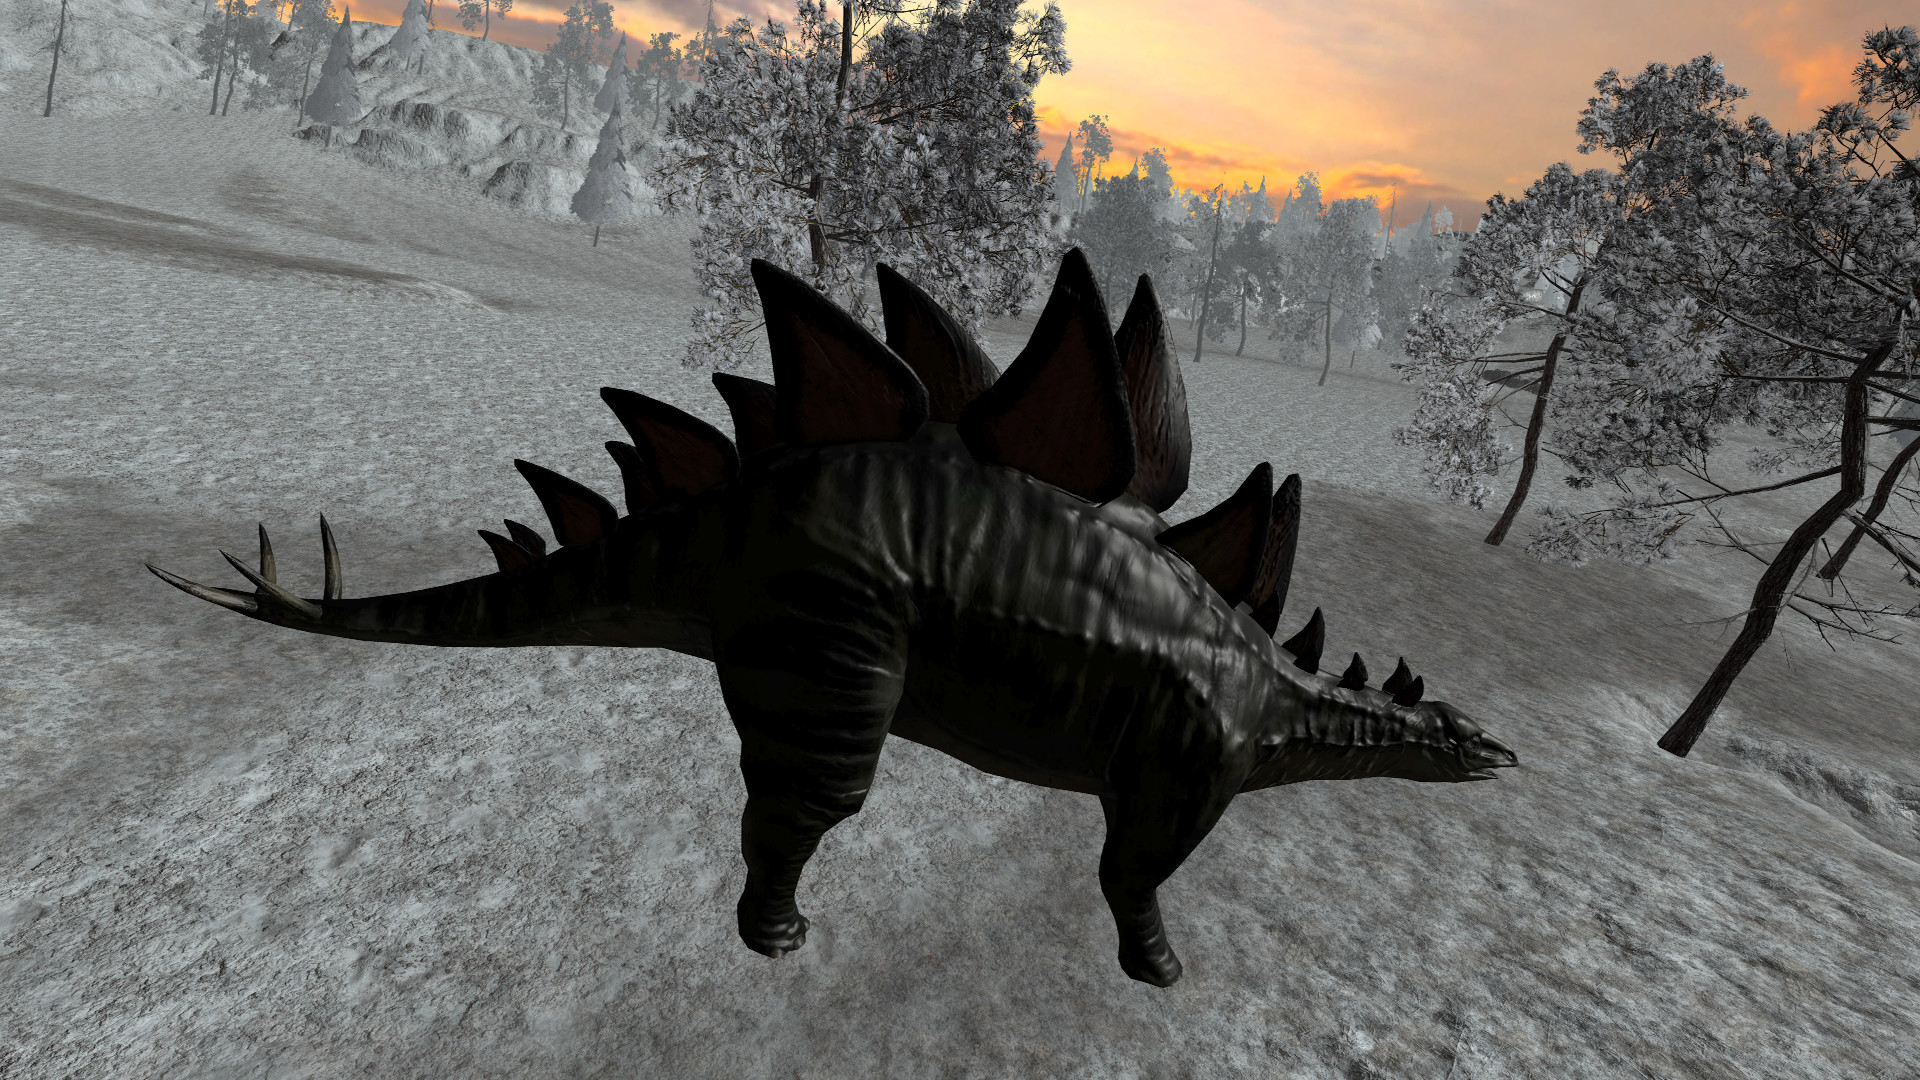 Dinosaur Hunt - Stegosaurus Expansion Pack DLC Steam CD Key 0.32 $